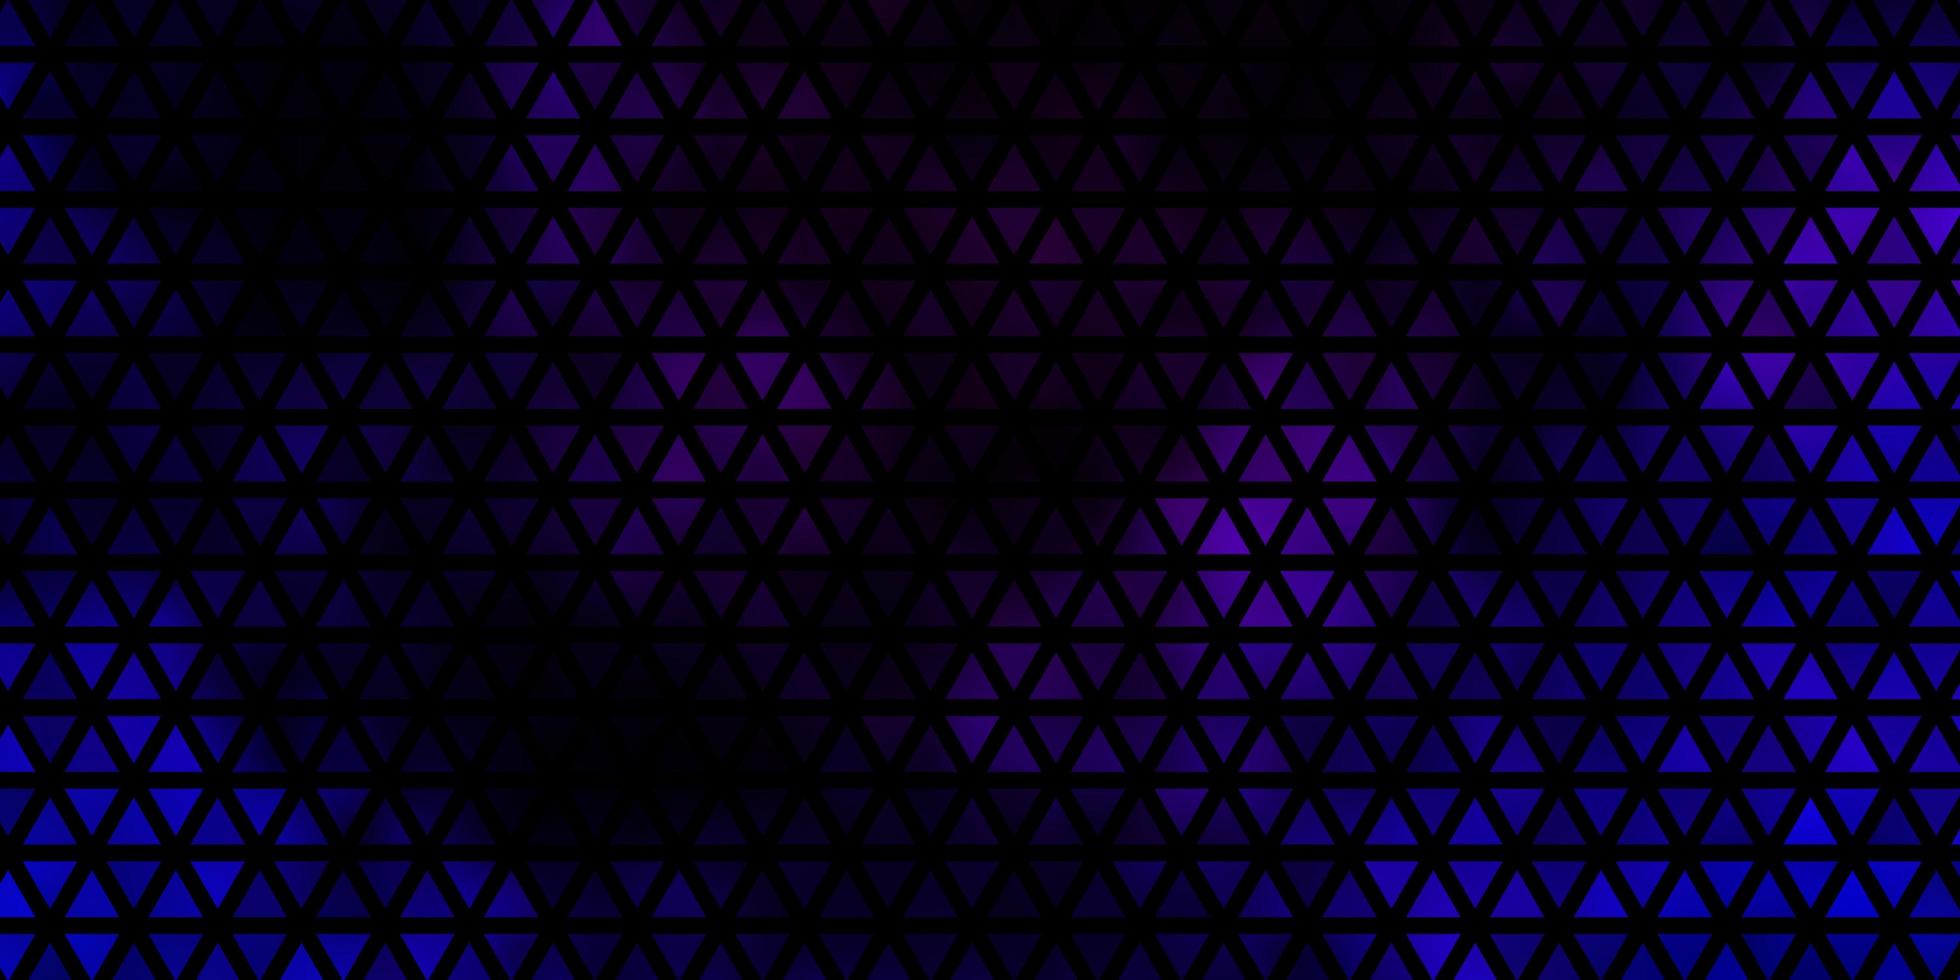 mörkrosa, blå vektorbakgrund med linjer, trianglar. vektor